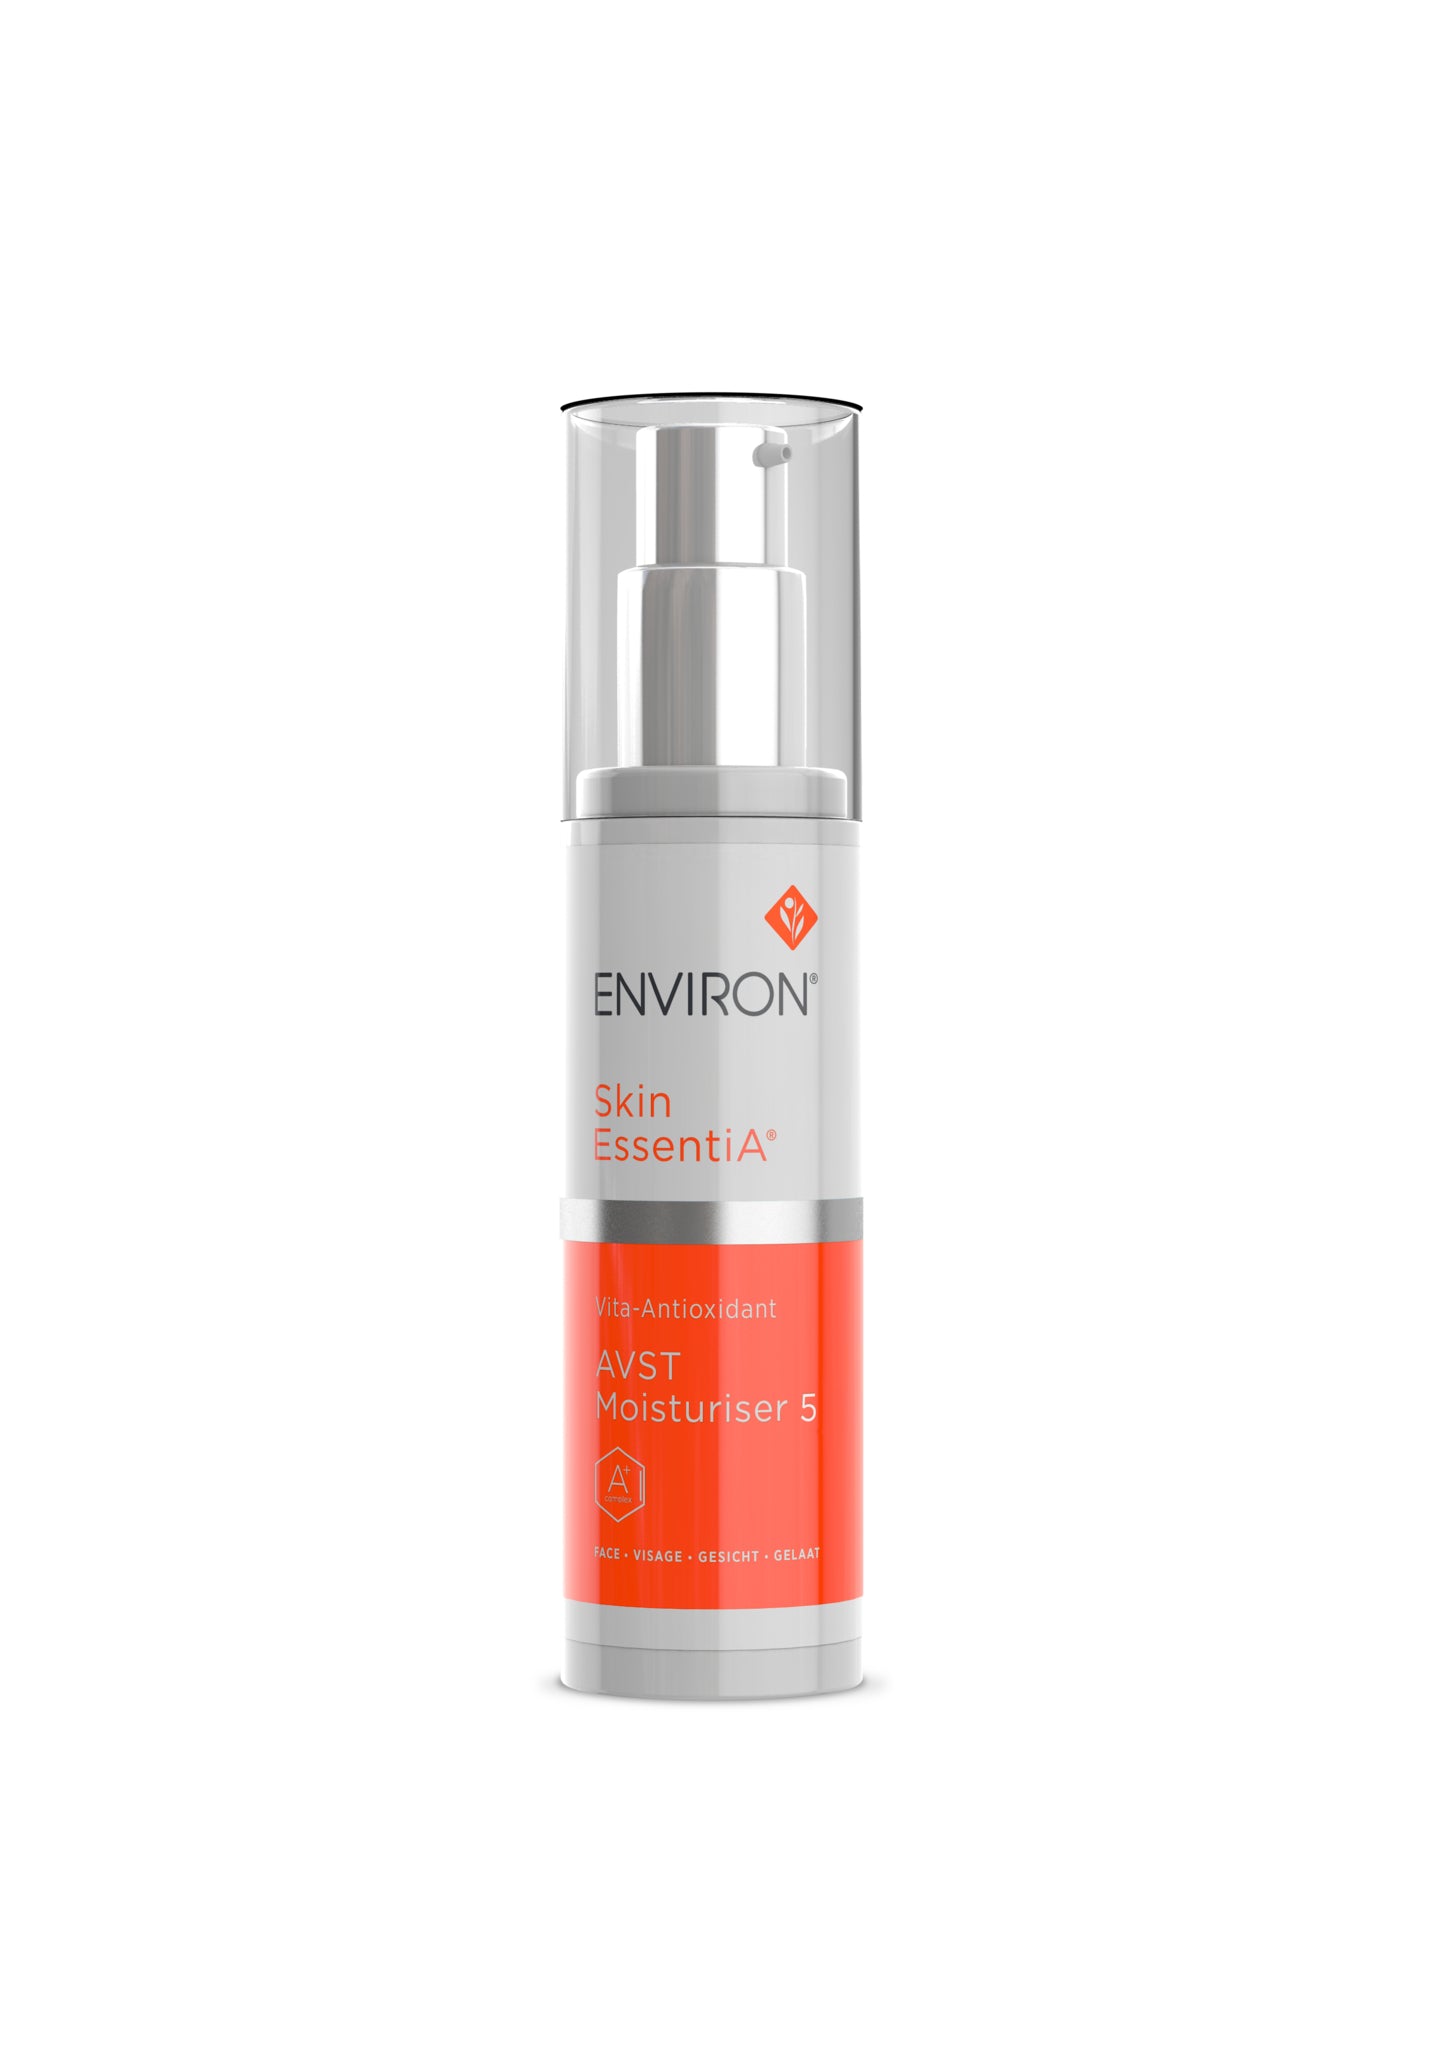 Environ Skin EssentiA® range - Vita-Antioxiant AVST Moisturiser 5